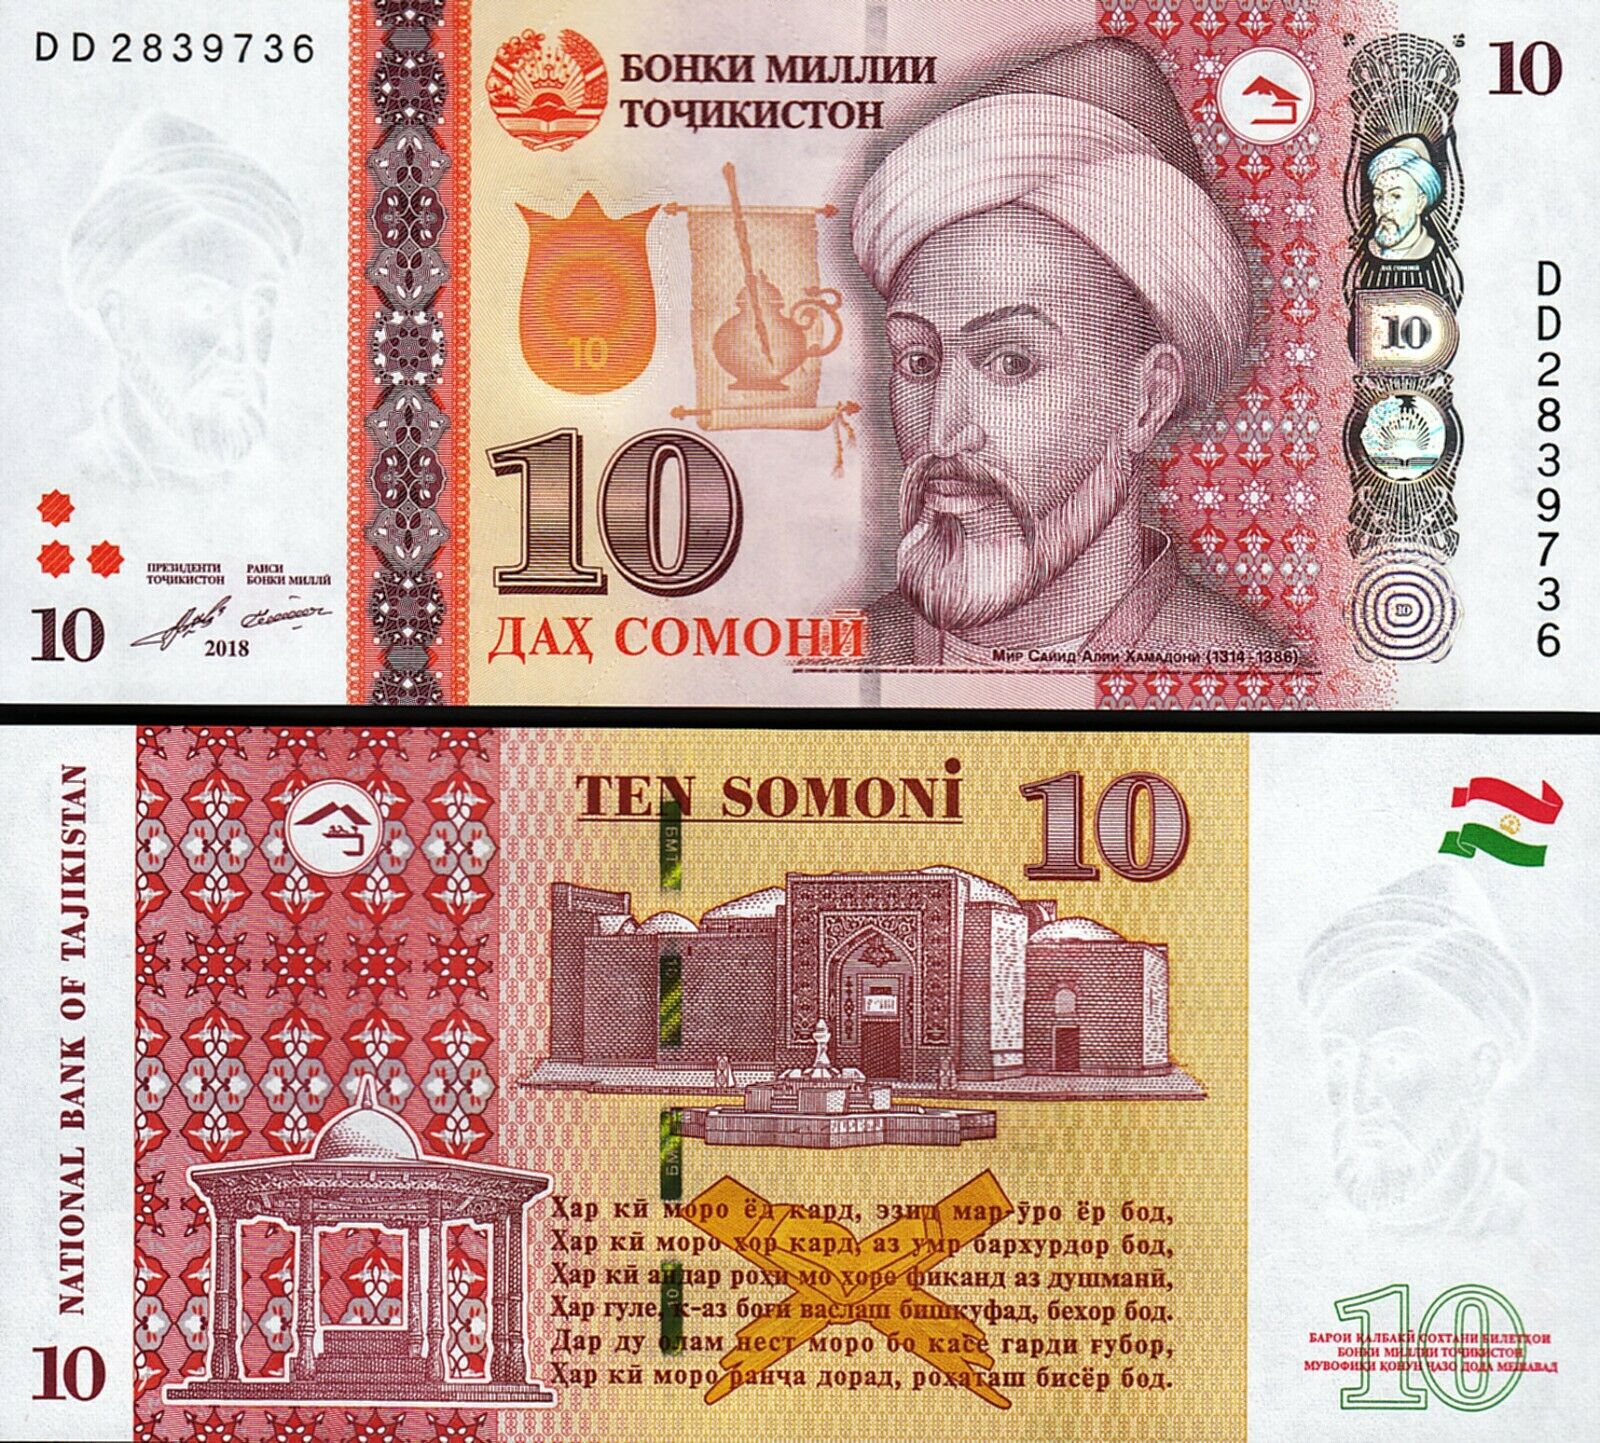 1 таджикский сомони. Купюры Таджикистана. Таджикские банкноты. Таджикский Сомони. Купюры Таджикистана 1000 Сомони.